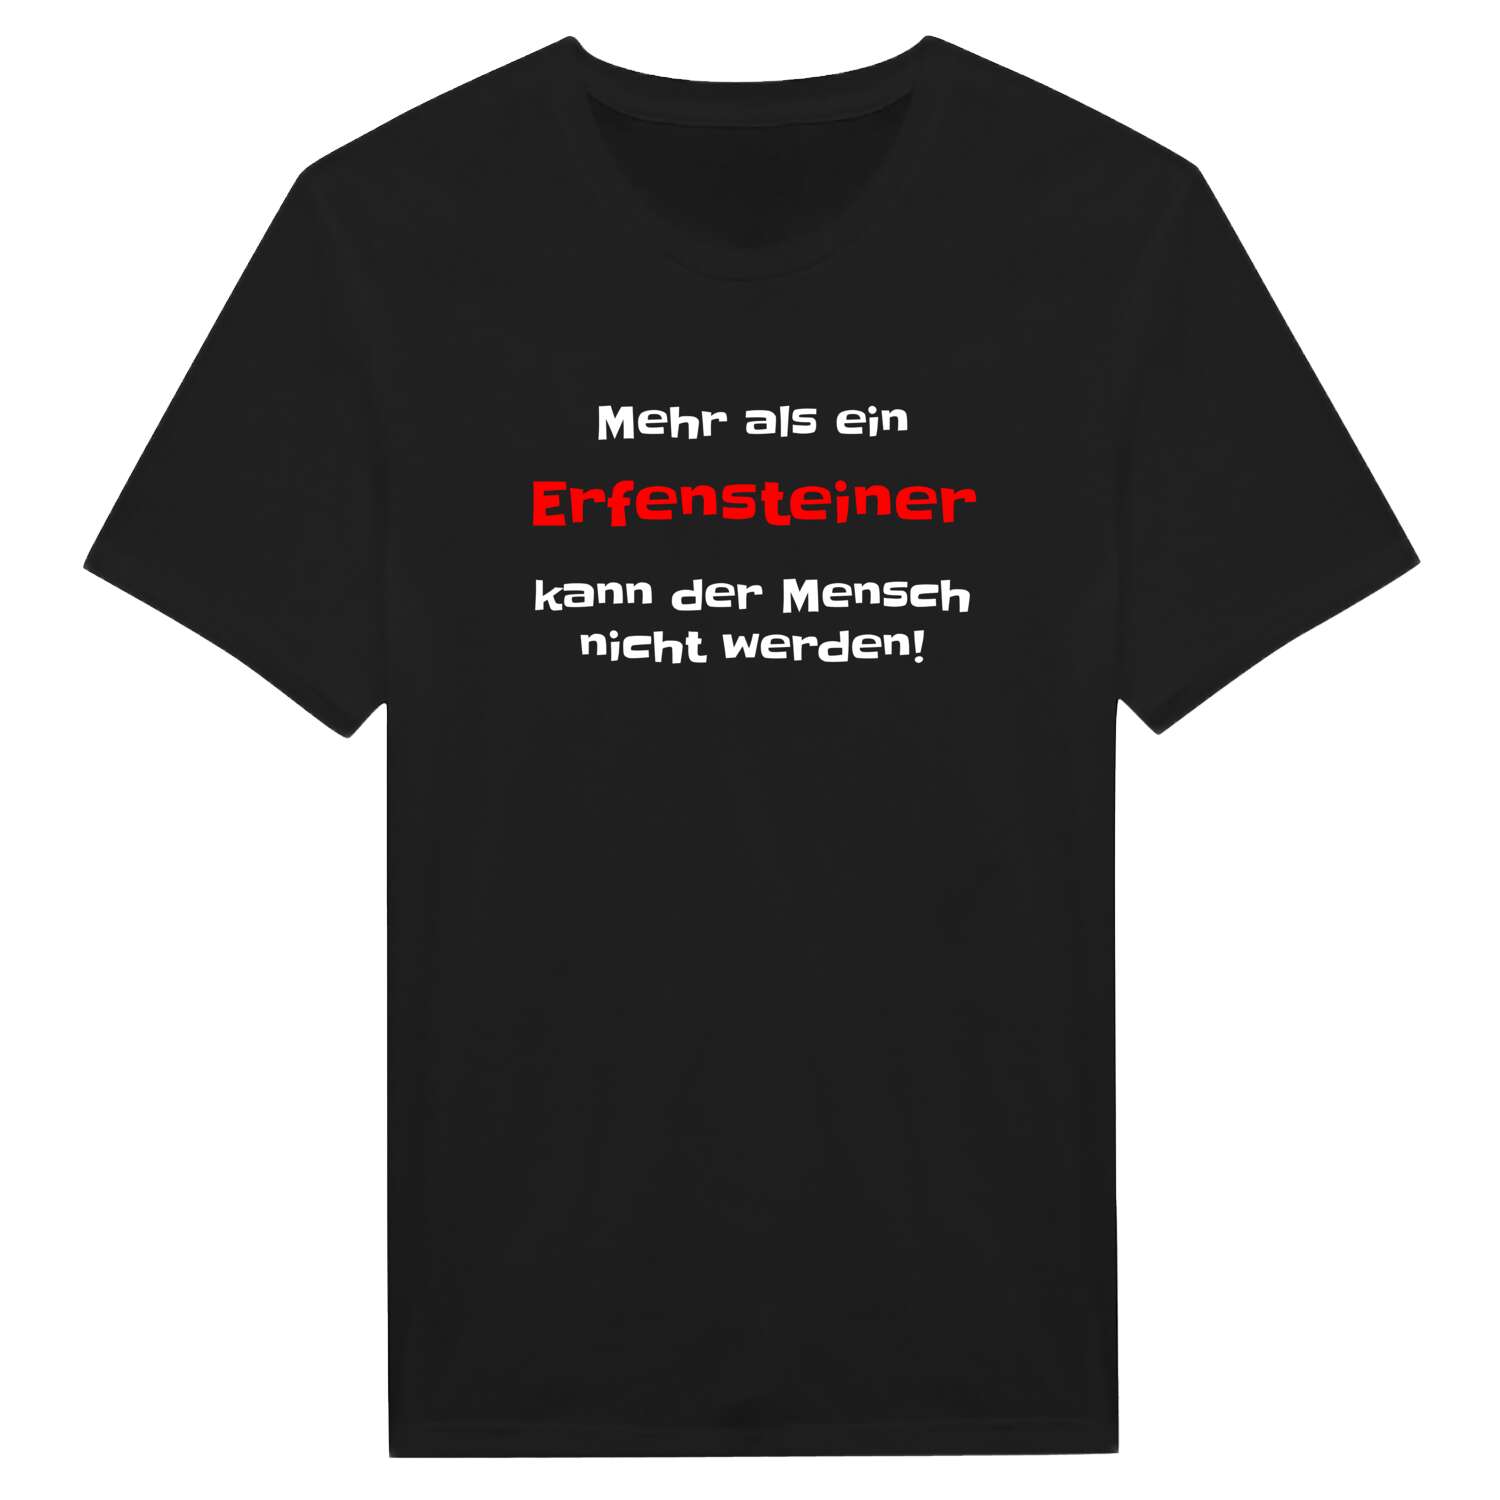 Erfenstein T-Shirt »Mehr als ein«